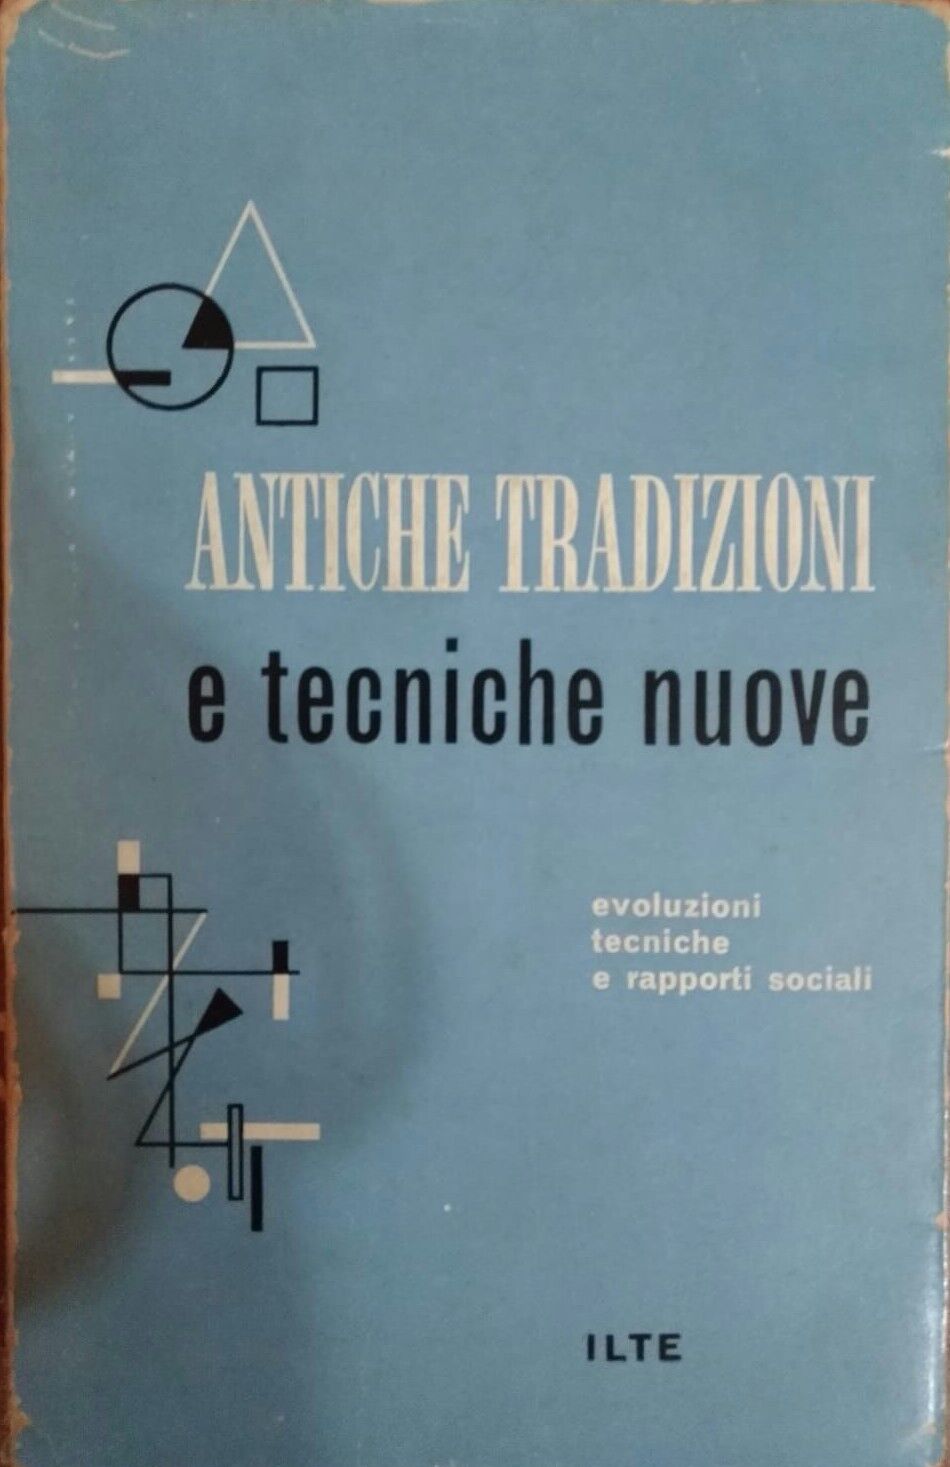 Antiche tradizioni e tecniche nuove,Margaret Mead,1959,Ilte Unesco - S